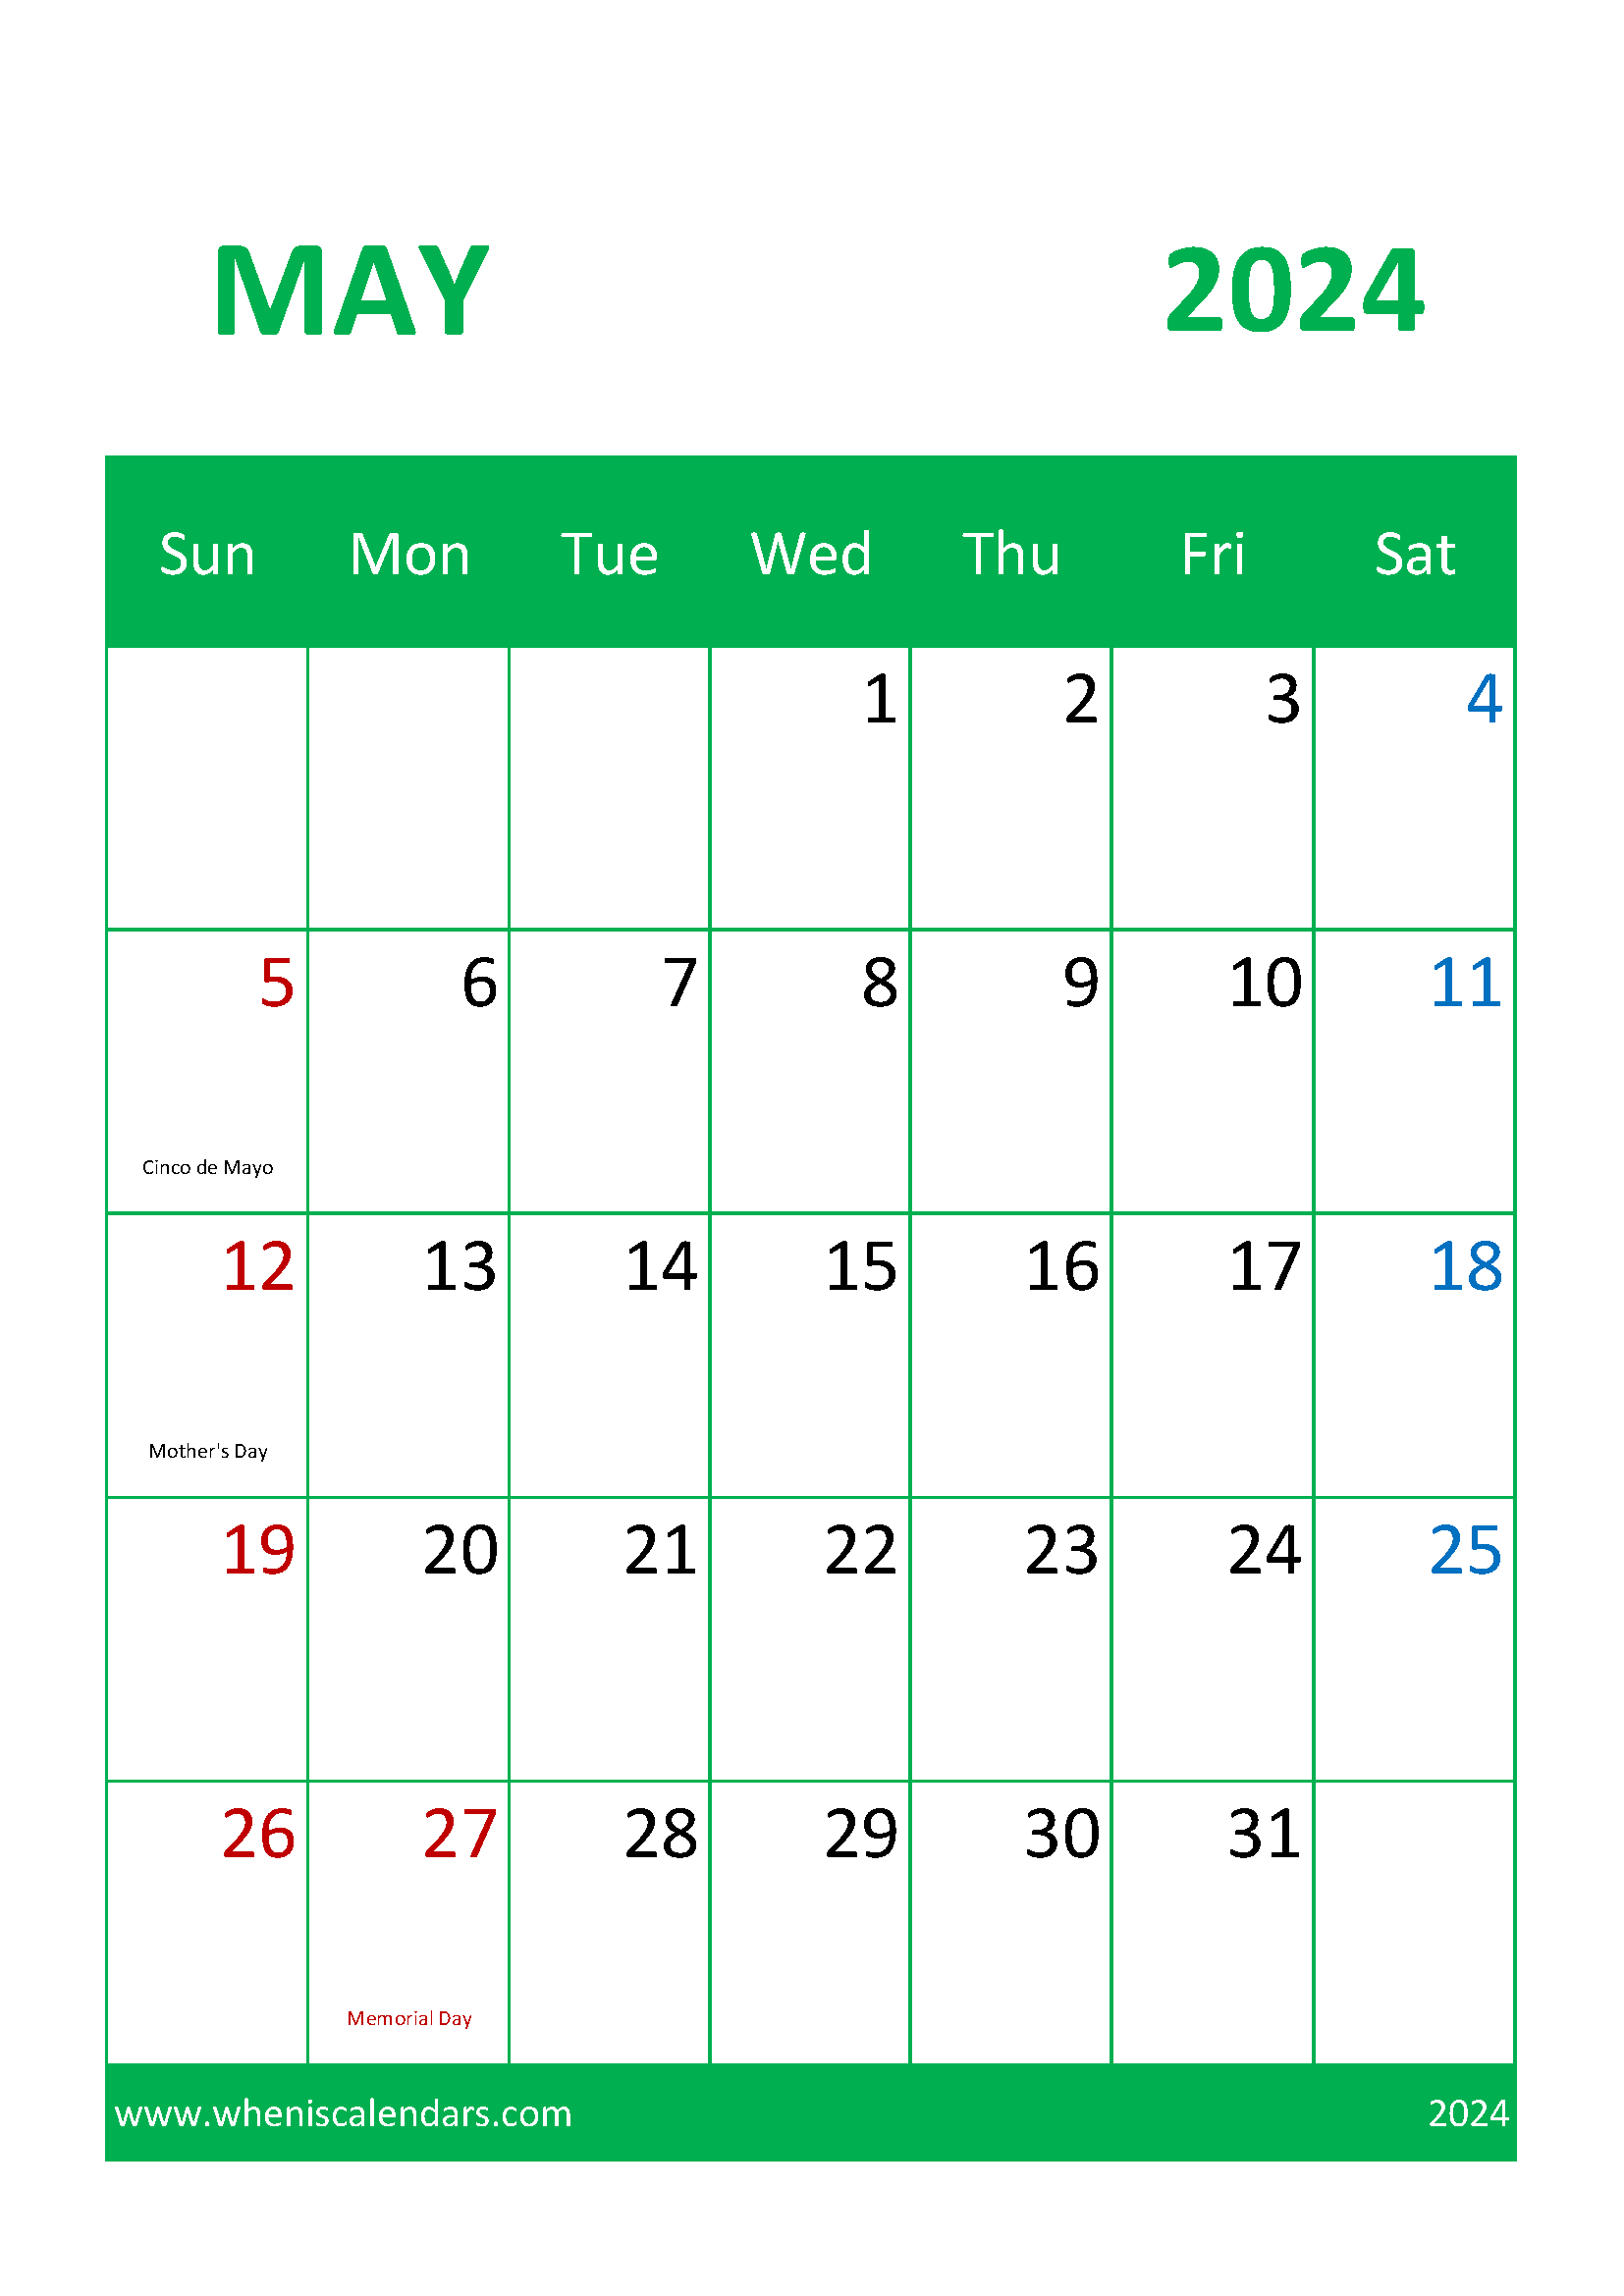 May Holiday Calendar 2024